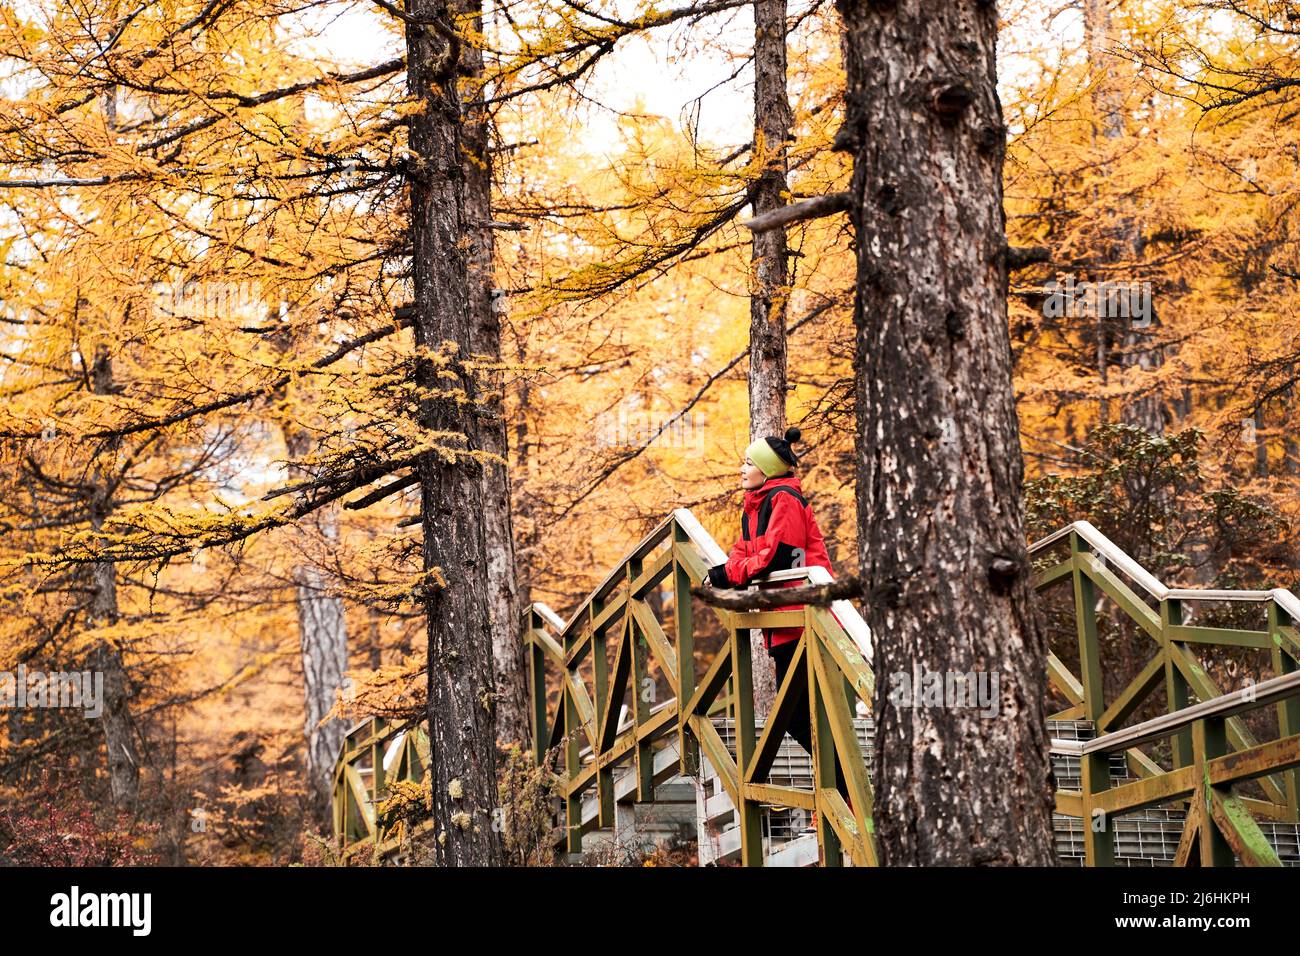 femme asiatique touriste femelle debout sur un pont en bois regardant le feuillage d'automne dans la forêt Banque D'Images